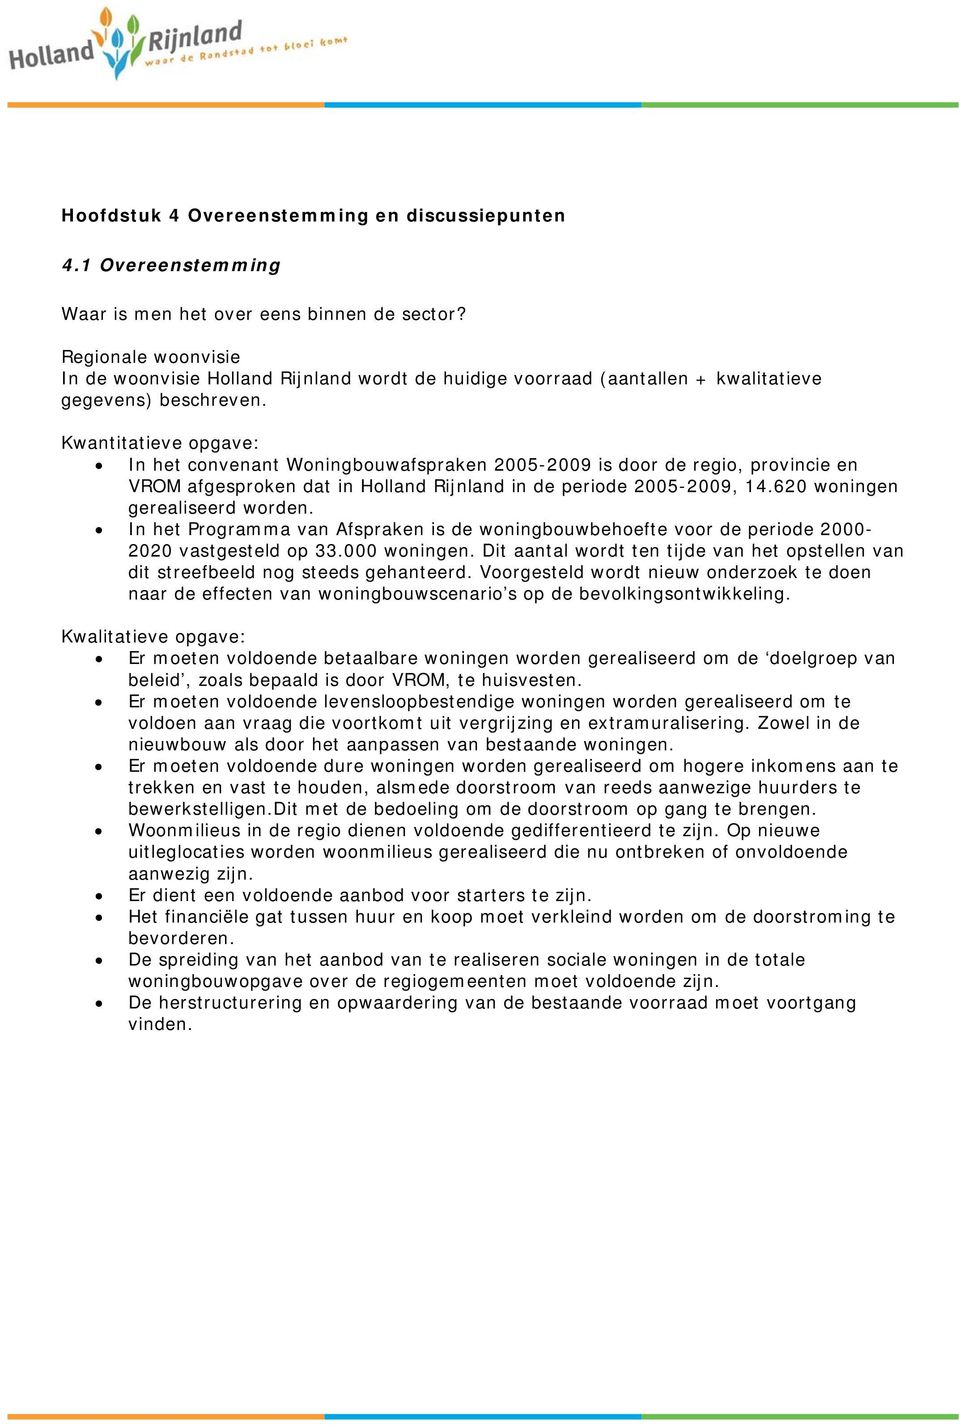 Kwantitatieve opgave: In het convenant Woningbouwafspraken 2005-2009 is door de regio, provincie en VROM afgesproken dat in Holland Rijnland in de periode 2005-2009, 14.